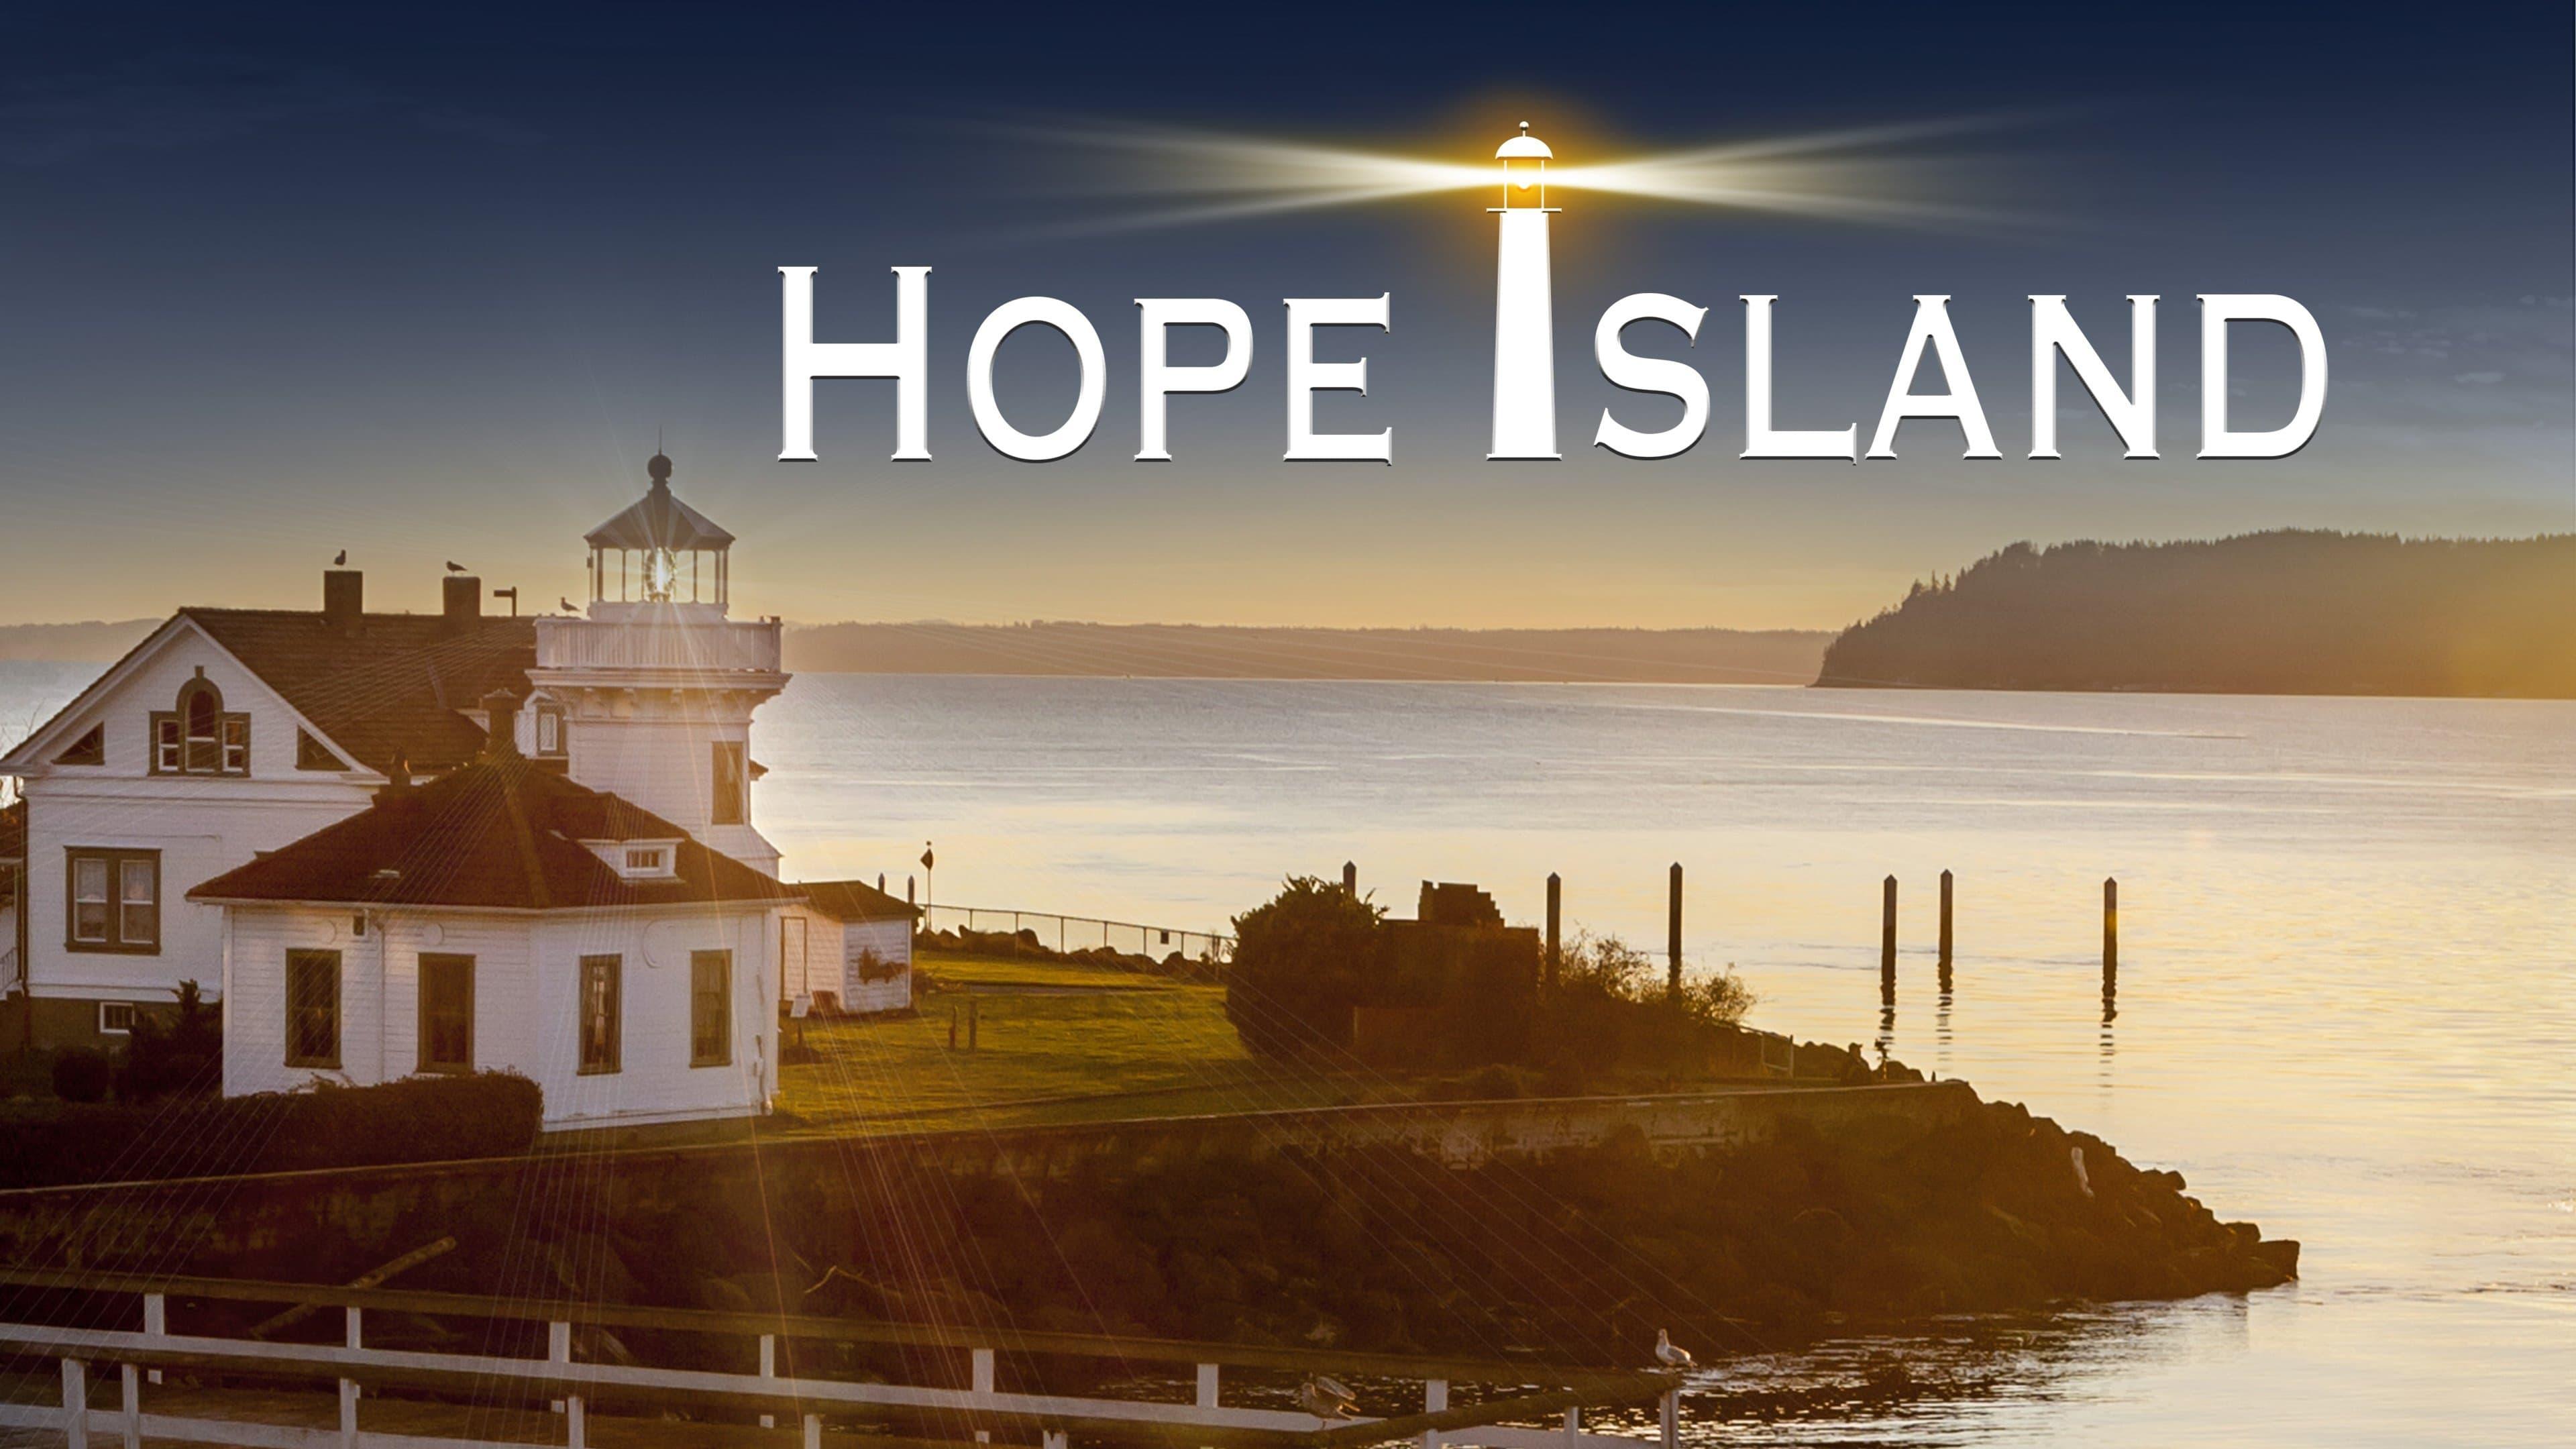 Hope Island backdrop